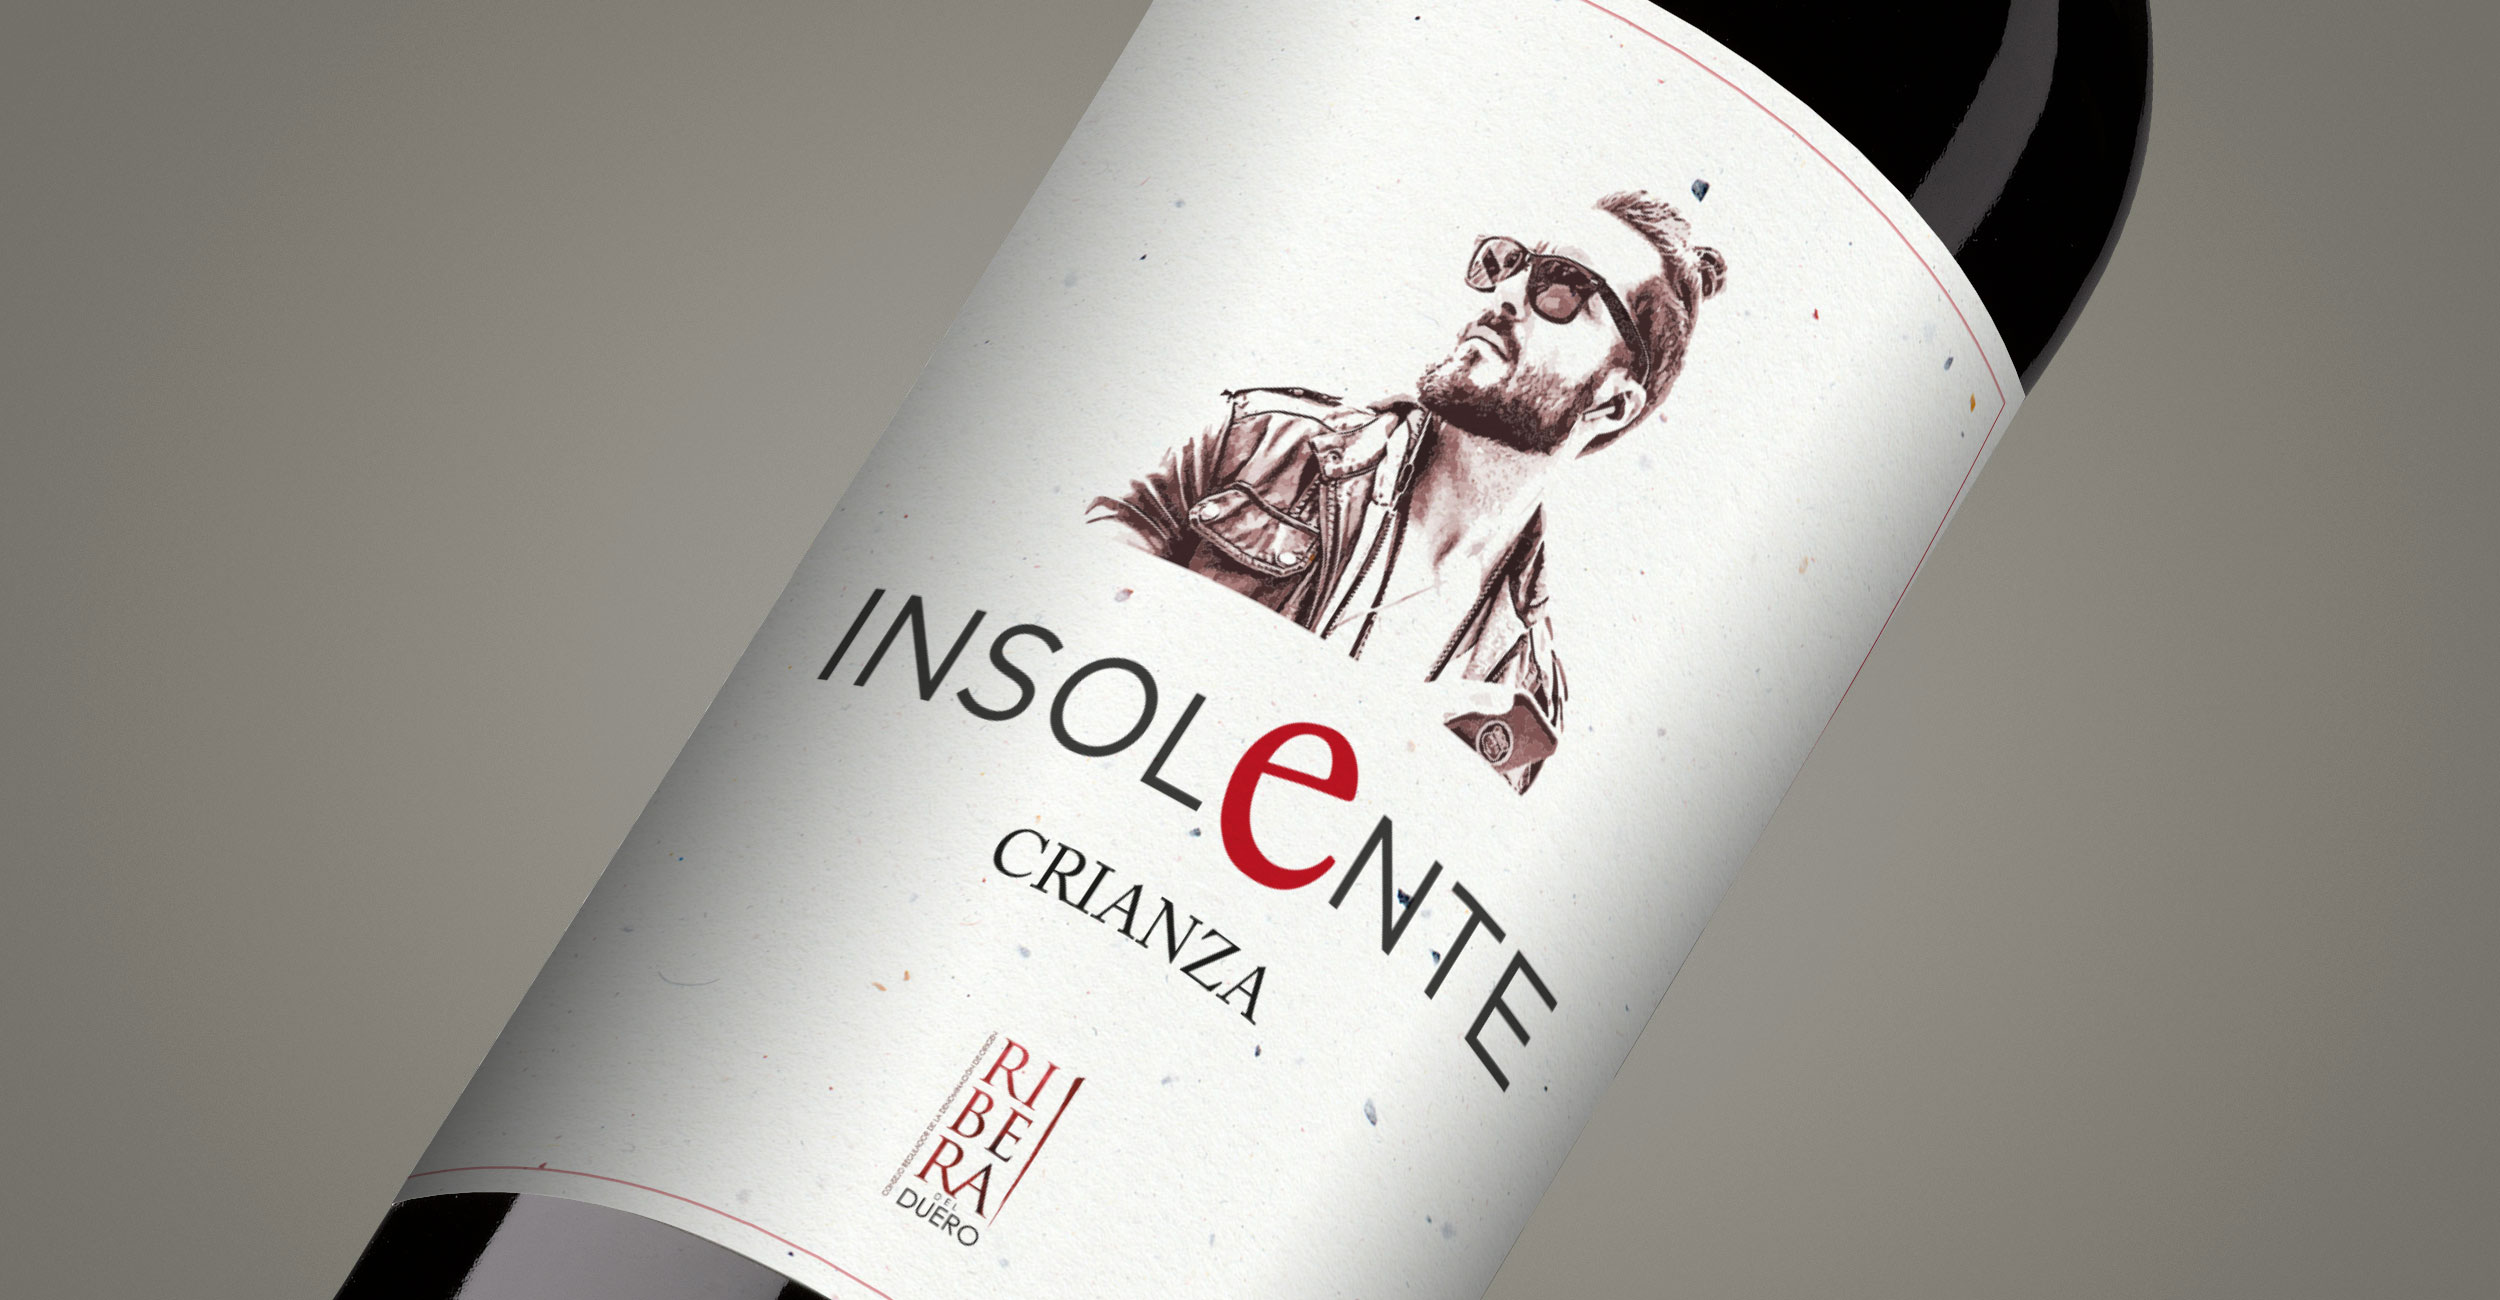 Diseño gráfico y creativo de etiquetas de vino tinto joven y packaging de vino para INSOLENTE